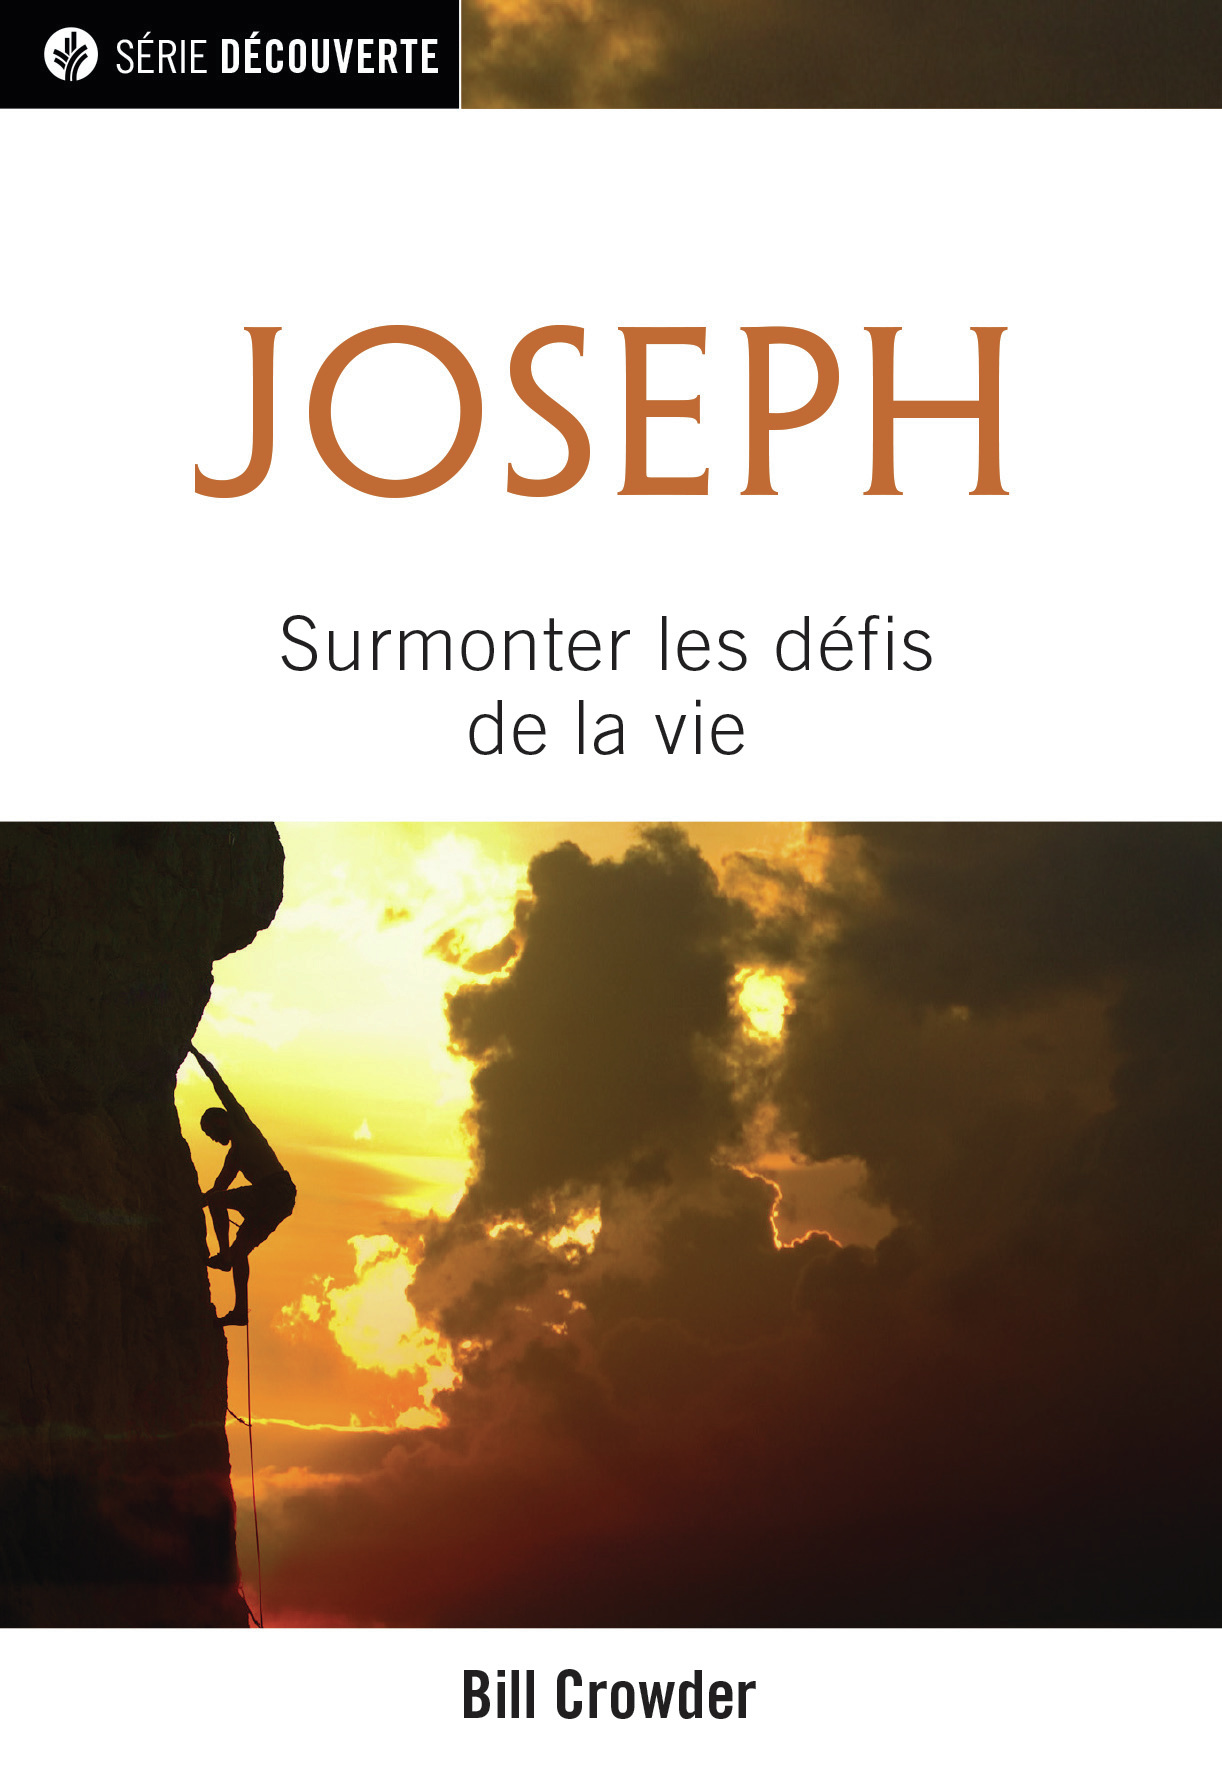 Joseph - Surmonter les défis de la vie [brochure NPQ série découverte]